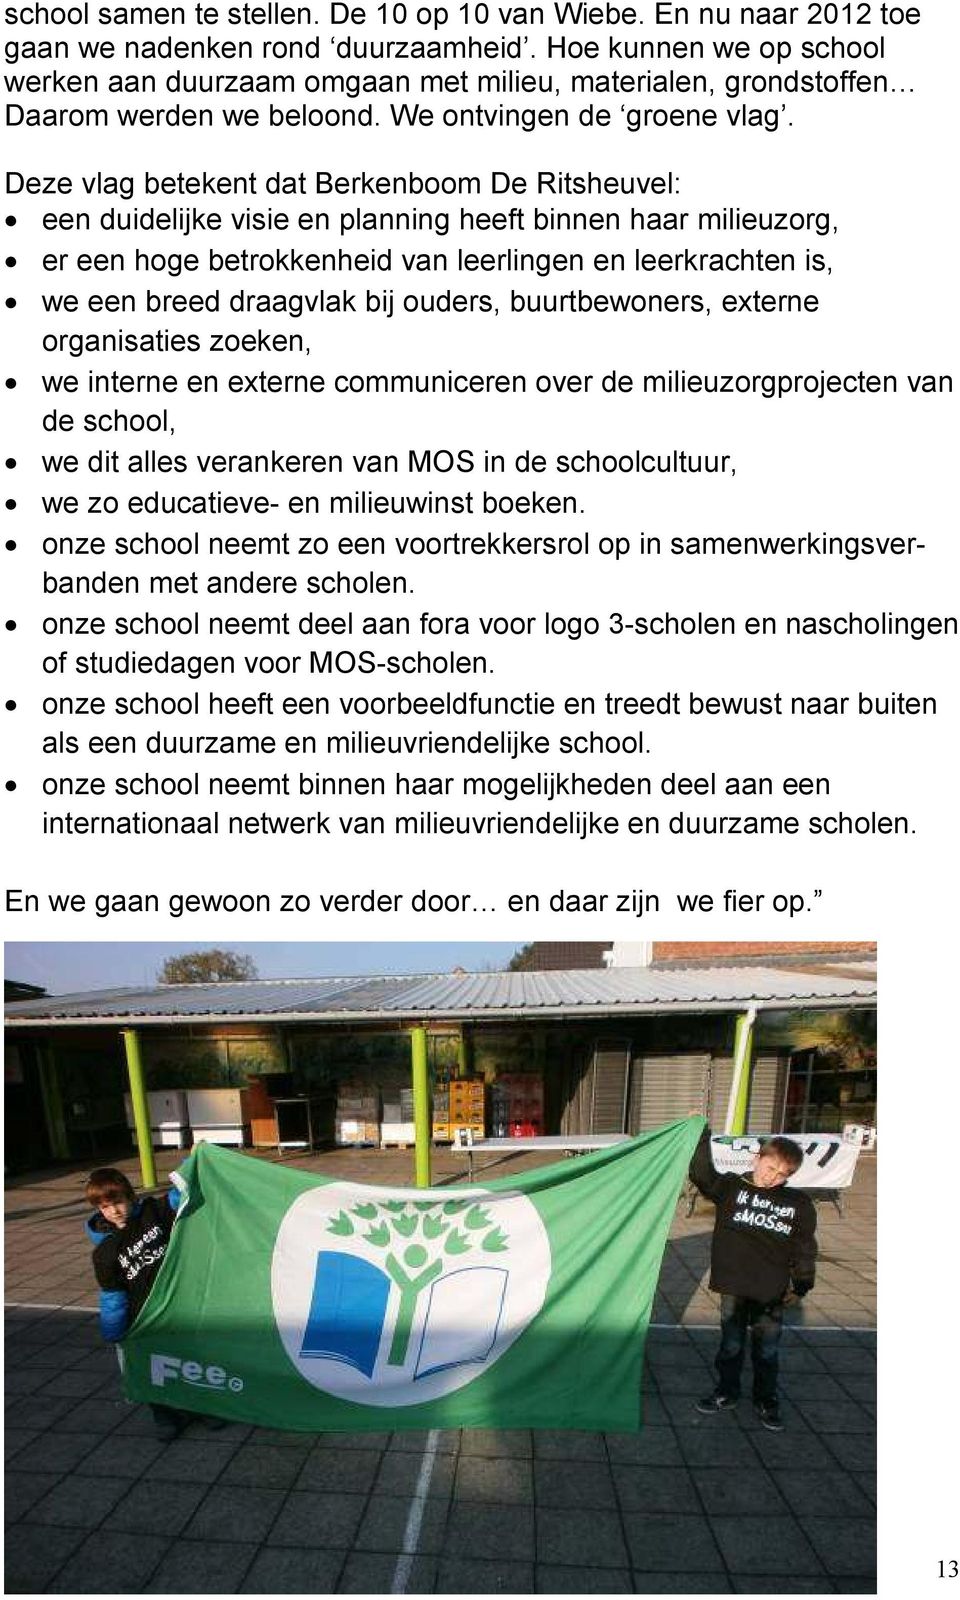 Deze vlag betekent dat Berkenboom De Ritsheuvel: een duidelijke visie en planning heeft binnen haar milieuzorg, er een hoge betrokkenheid van leerlingen en leerkrachten is, we een breed draagvlak bij